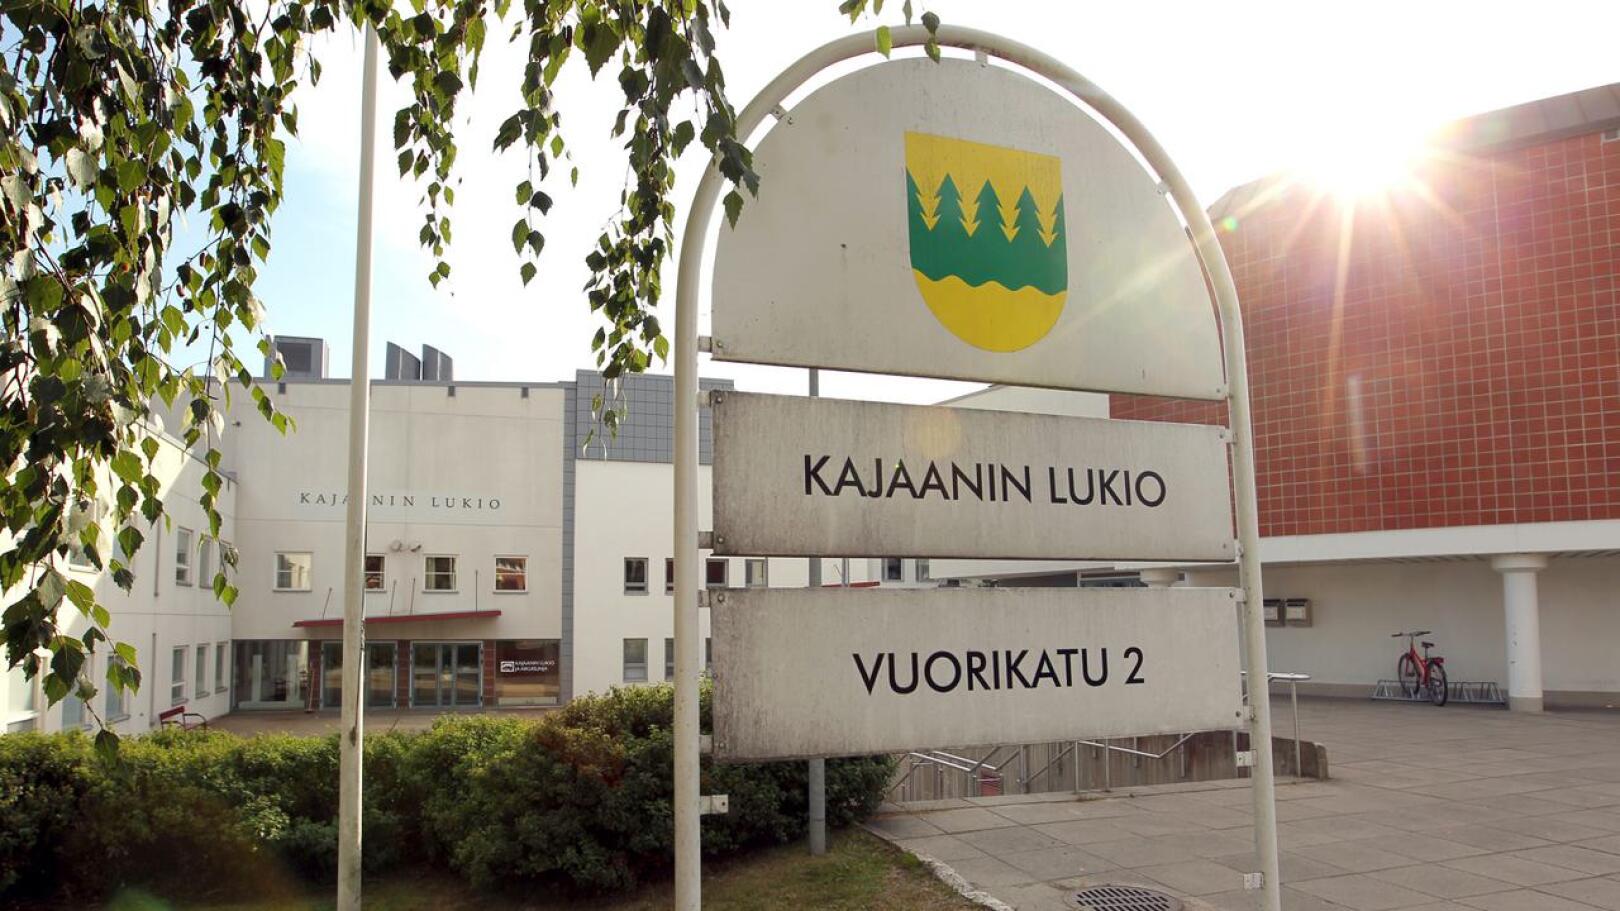 Kuhmon koronavirustilanne vaikuttaa jo muualla Kainuussa, esimerkiksi sadan kilometrin päässä Kajaanissa. Kajaanin lukion abit siirtyvät etäopetukseen.